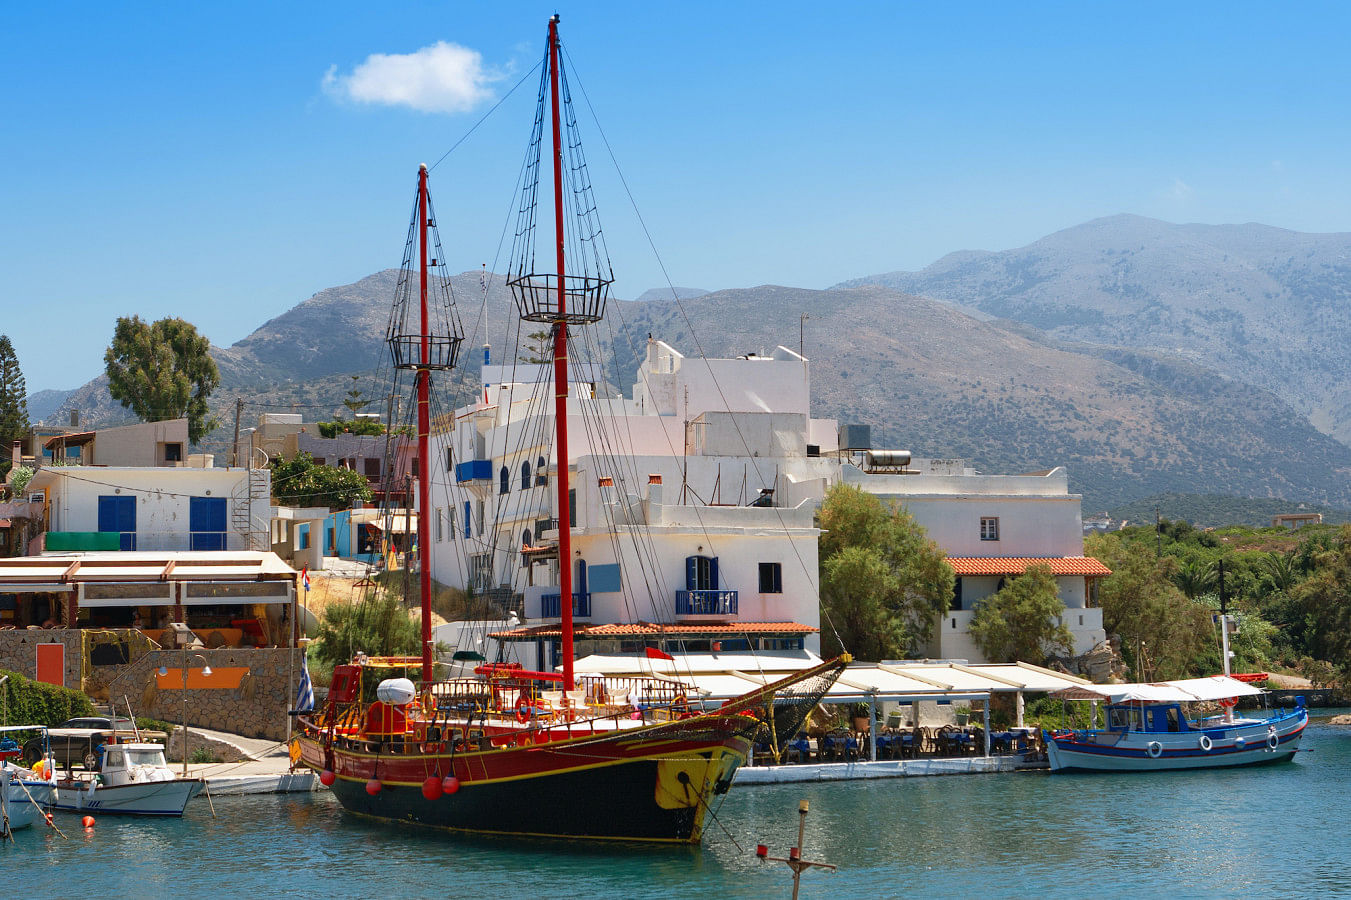 Rent a boat in Crete